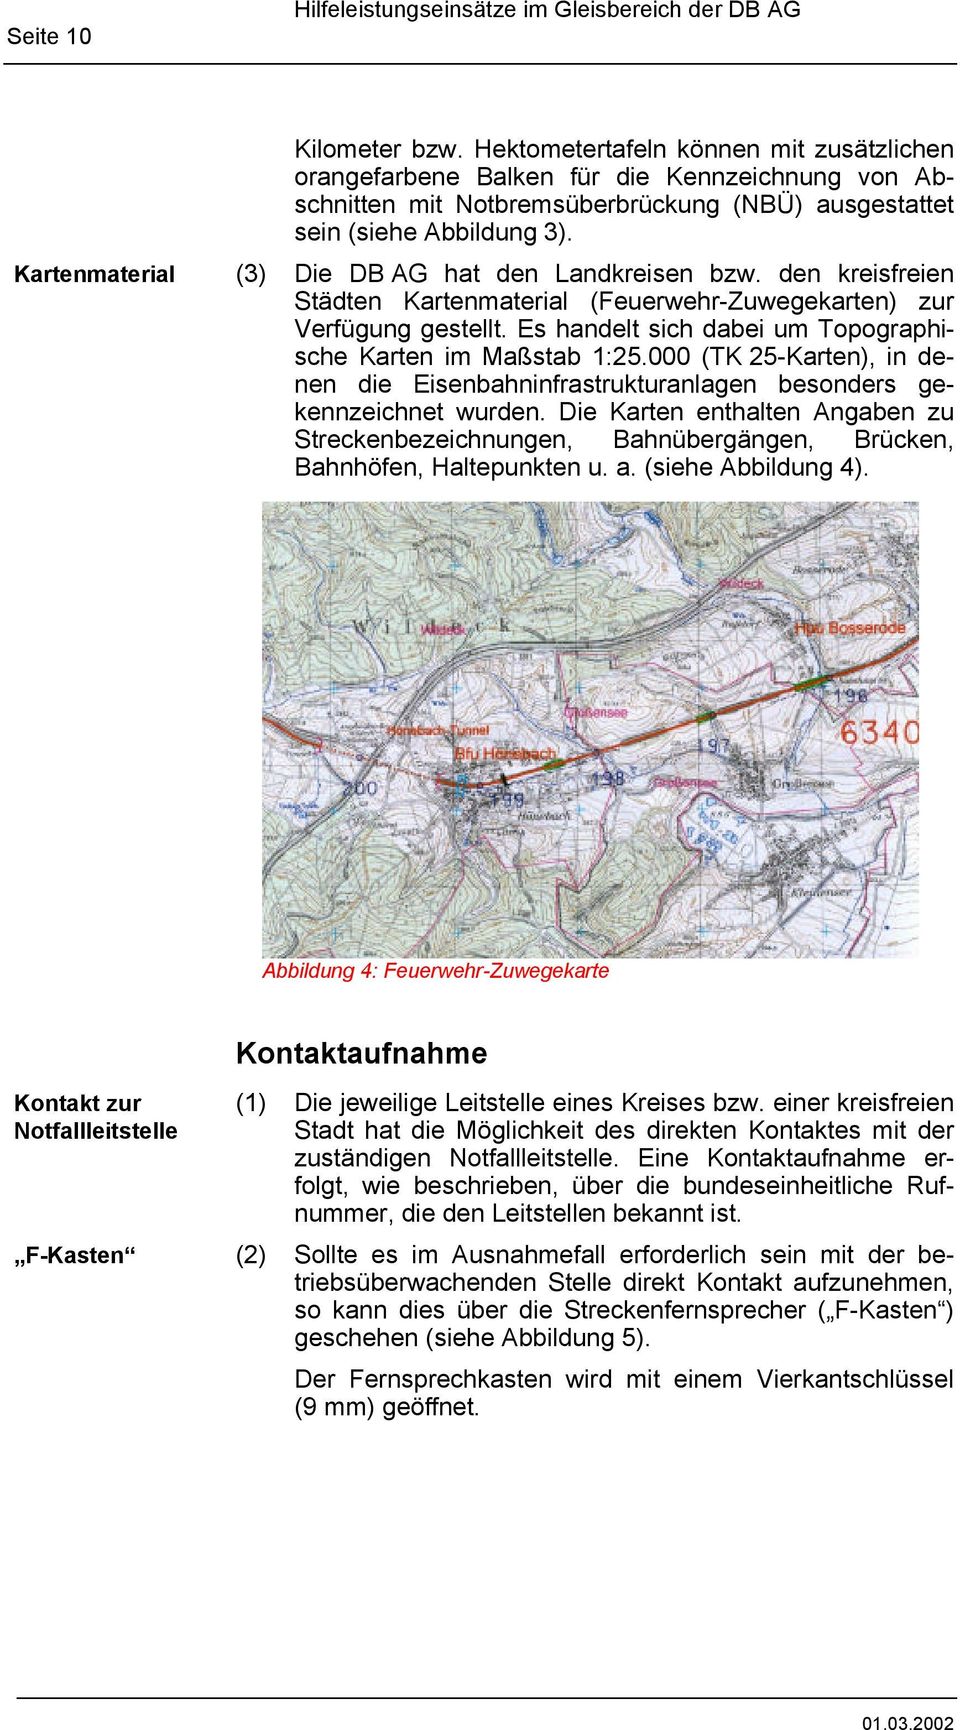 (3) Die DB AG hat den Landkreisen bzw. den kreisfreien Städten Kartenmaterial (Feuerwehr-Zuwegekarten) zur Verfügung gestellt. Es handelt sich dabei um Topographische Karten im Maßstab 1:25.